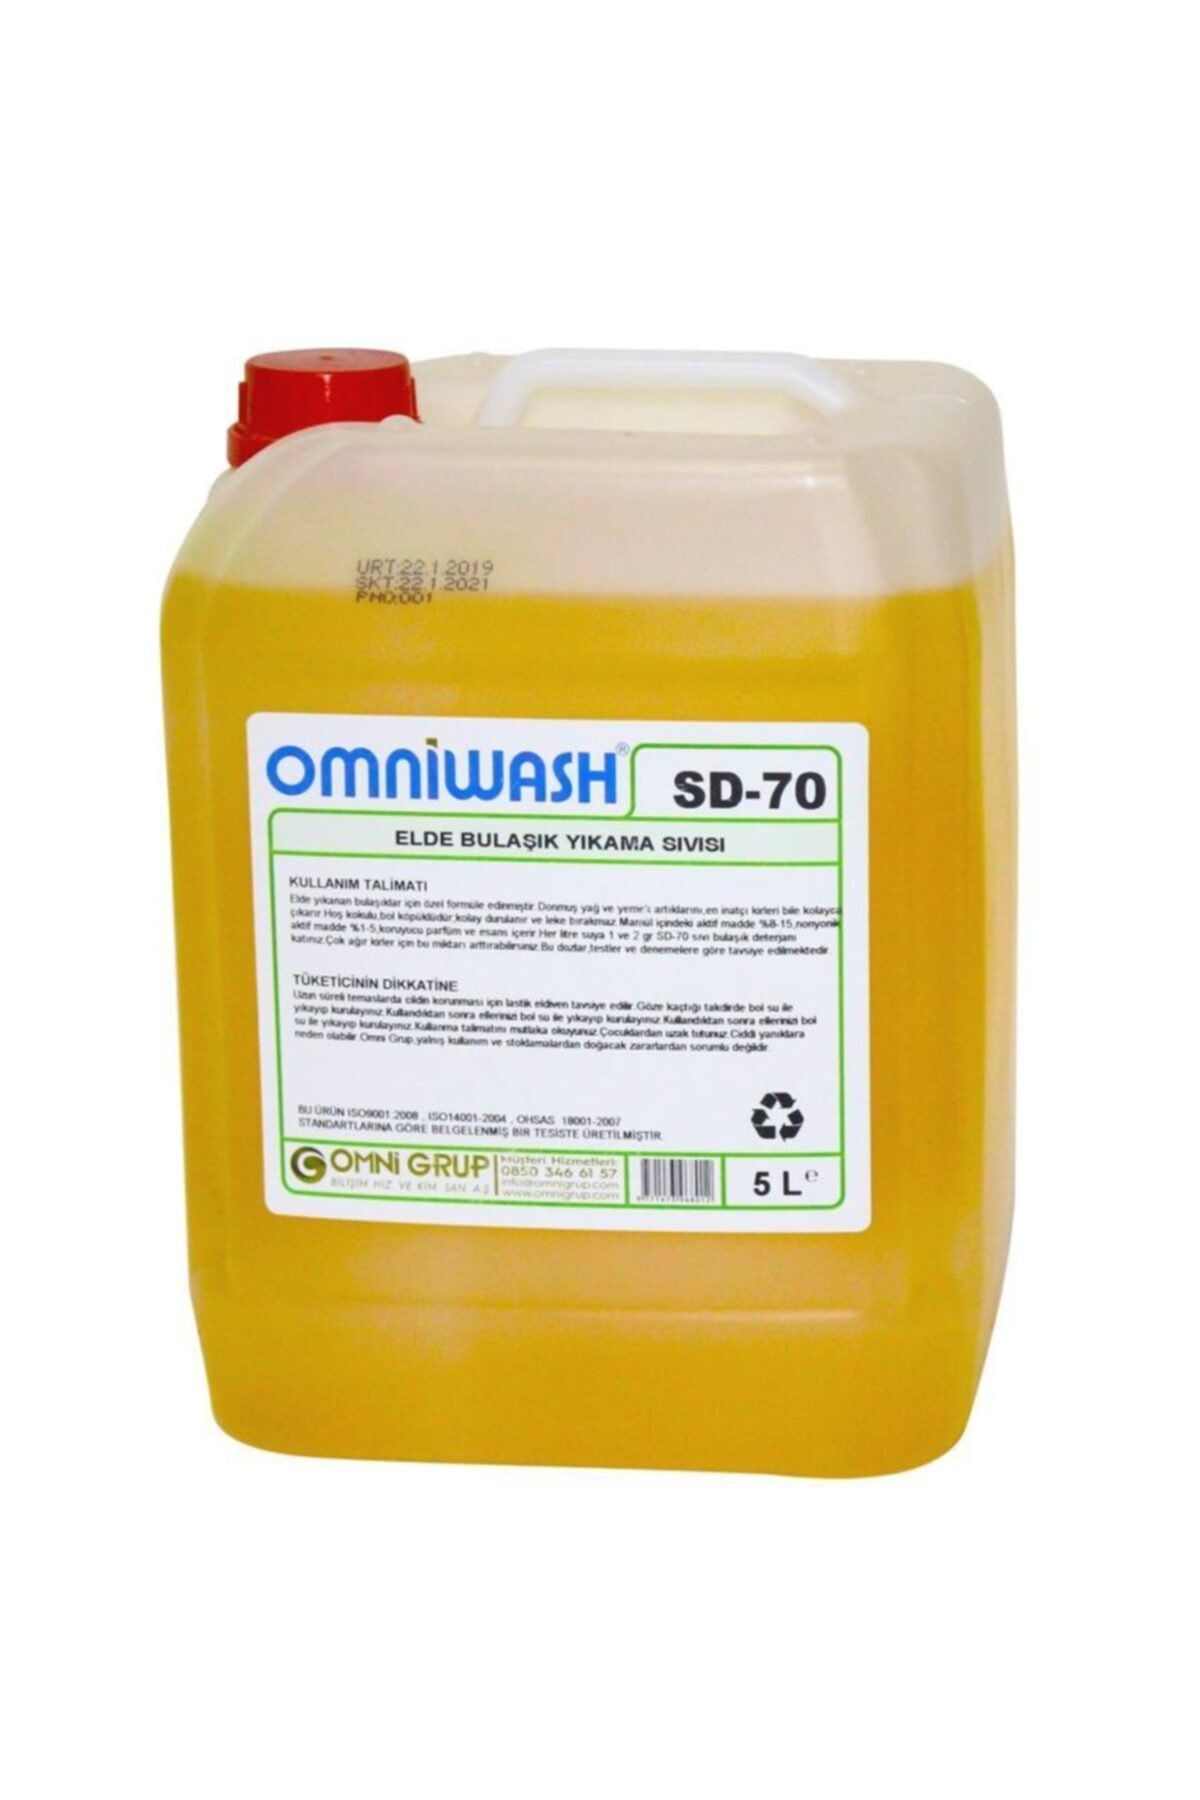 Omniwash SD-70 5 Litre Elde Bulaşık Yıkama Deterjanı